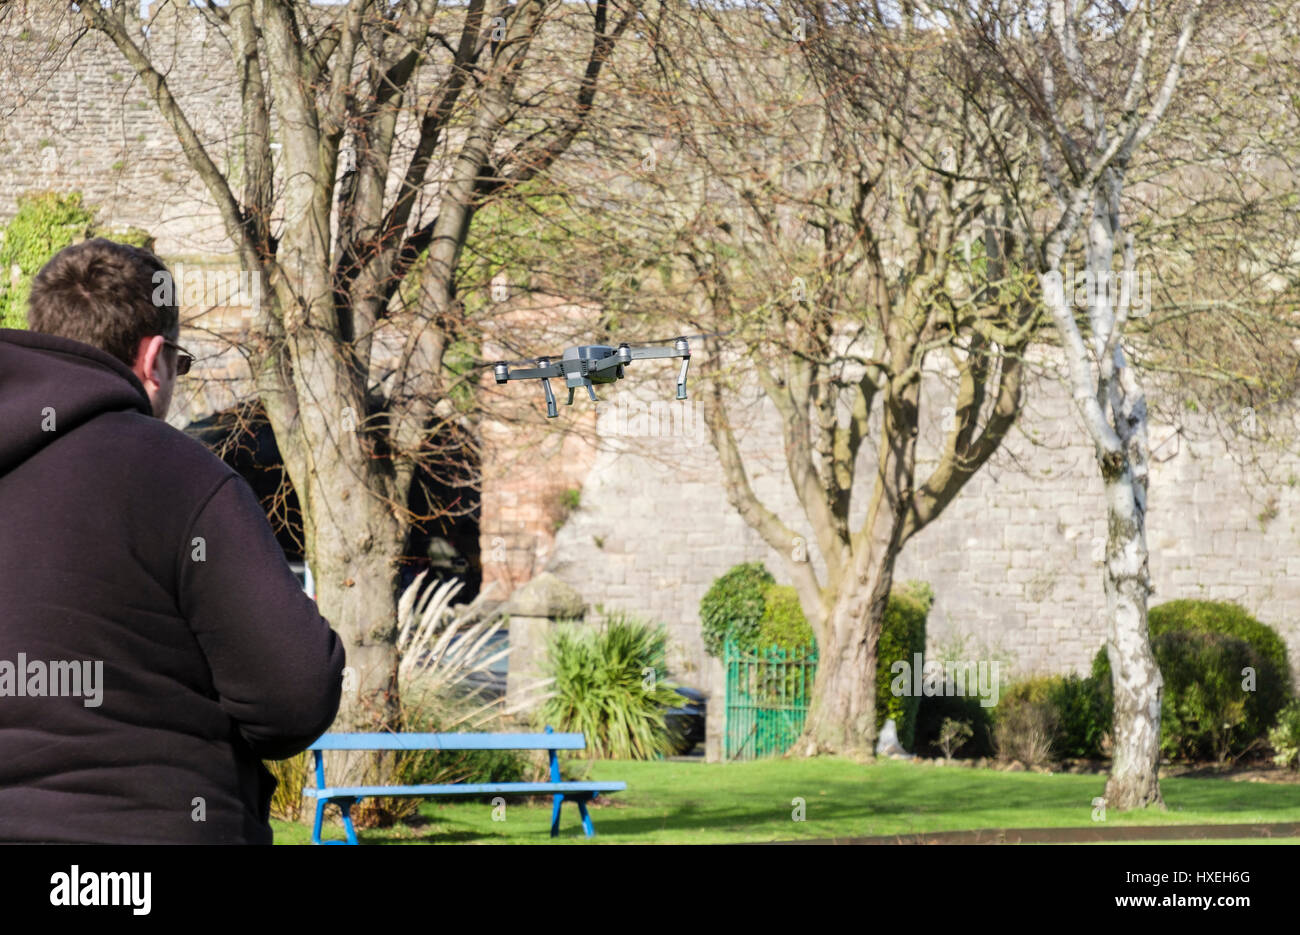 Hombre volando un juguete pequeño drone controlado por radio en un parque. Conwy, Gales, Reino Unido, Gran Bretaña Foto de stock